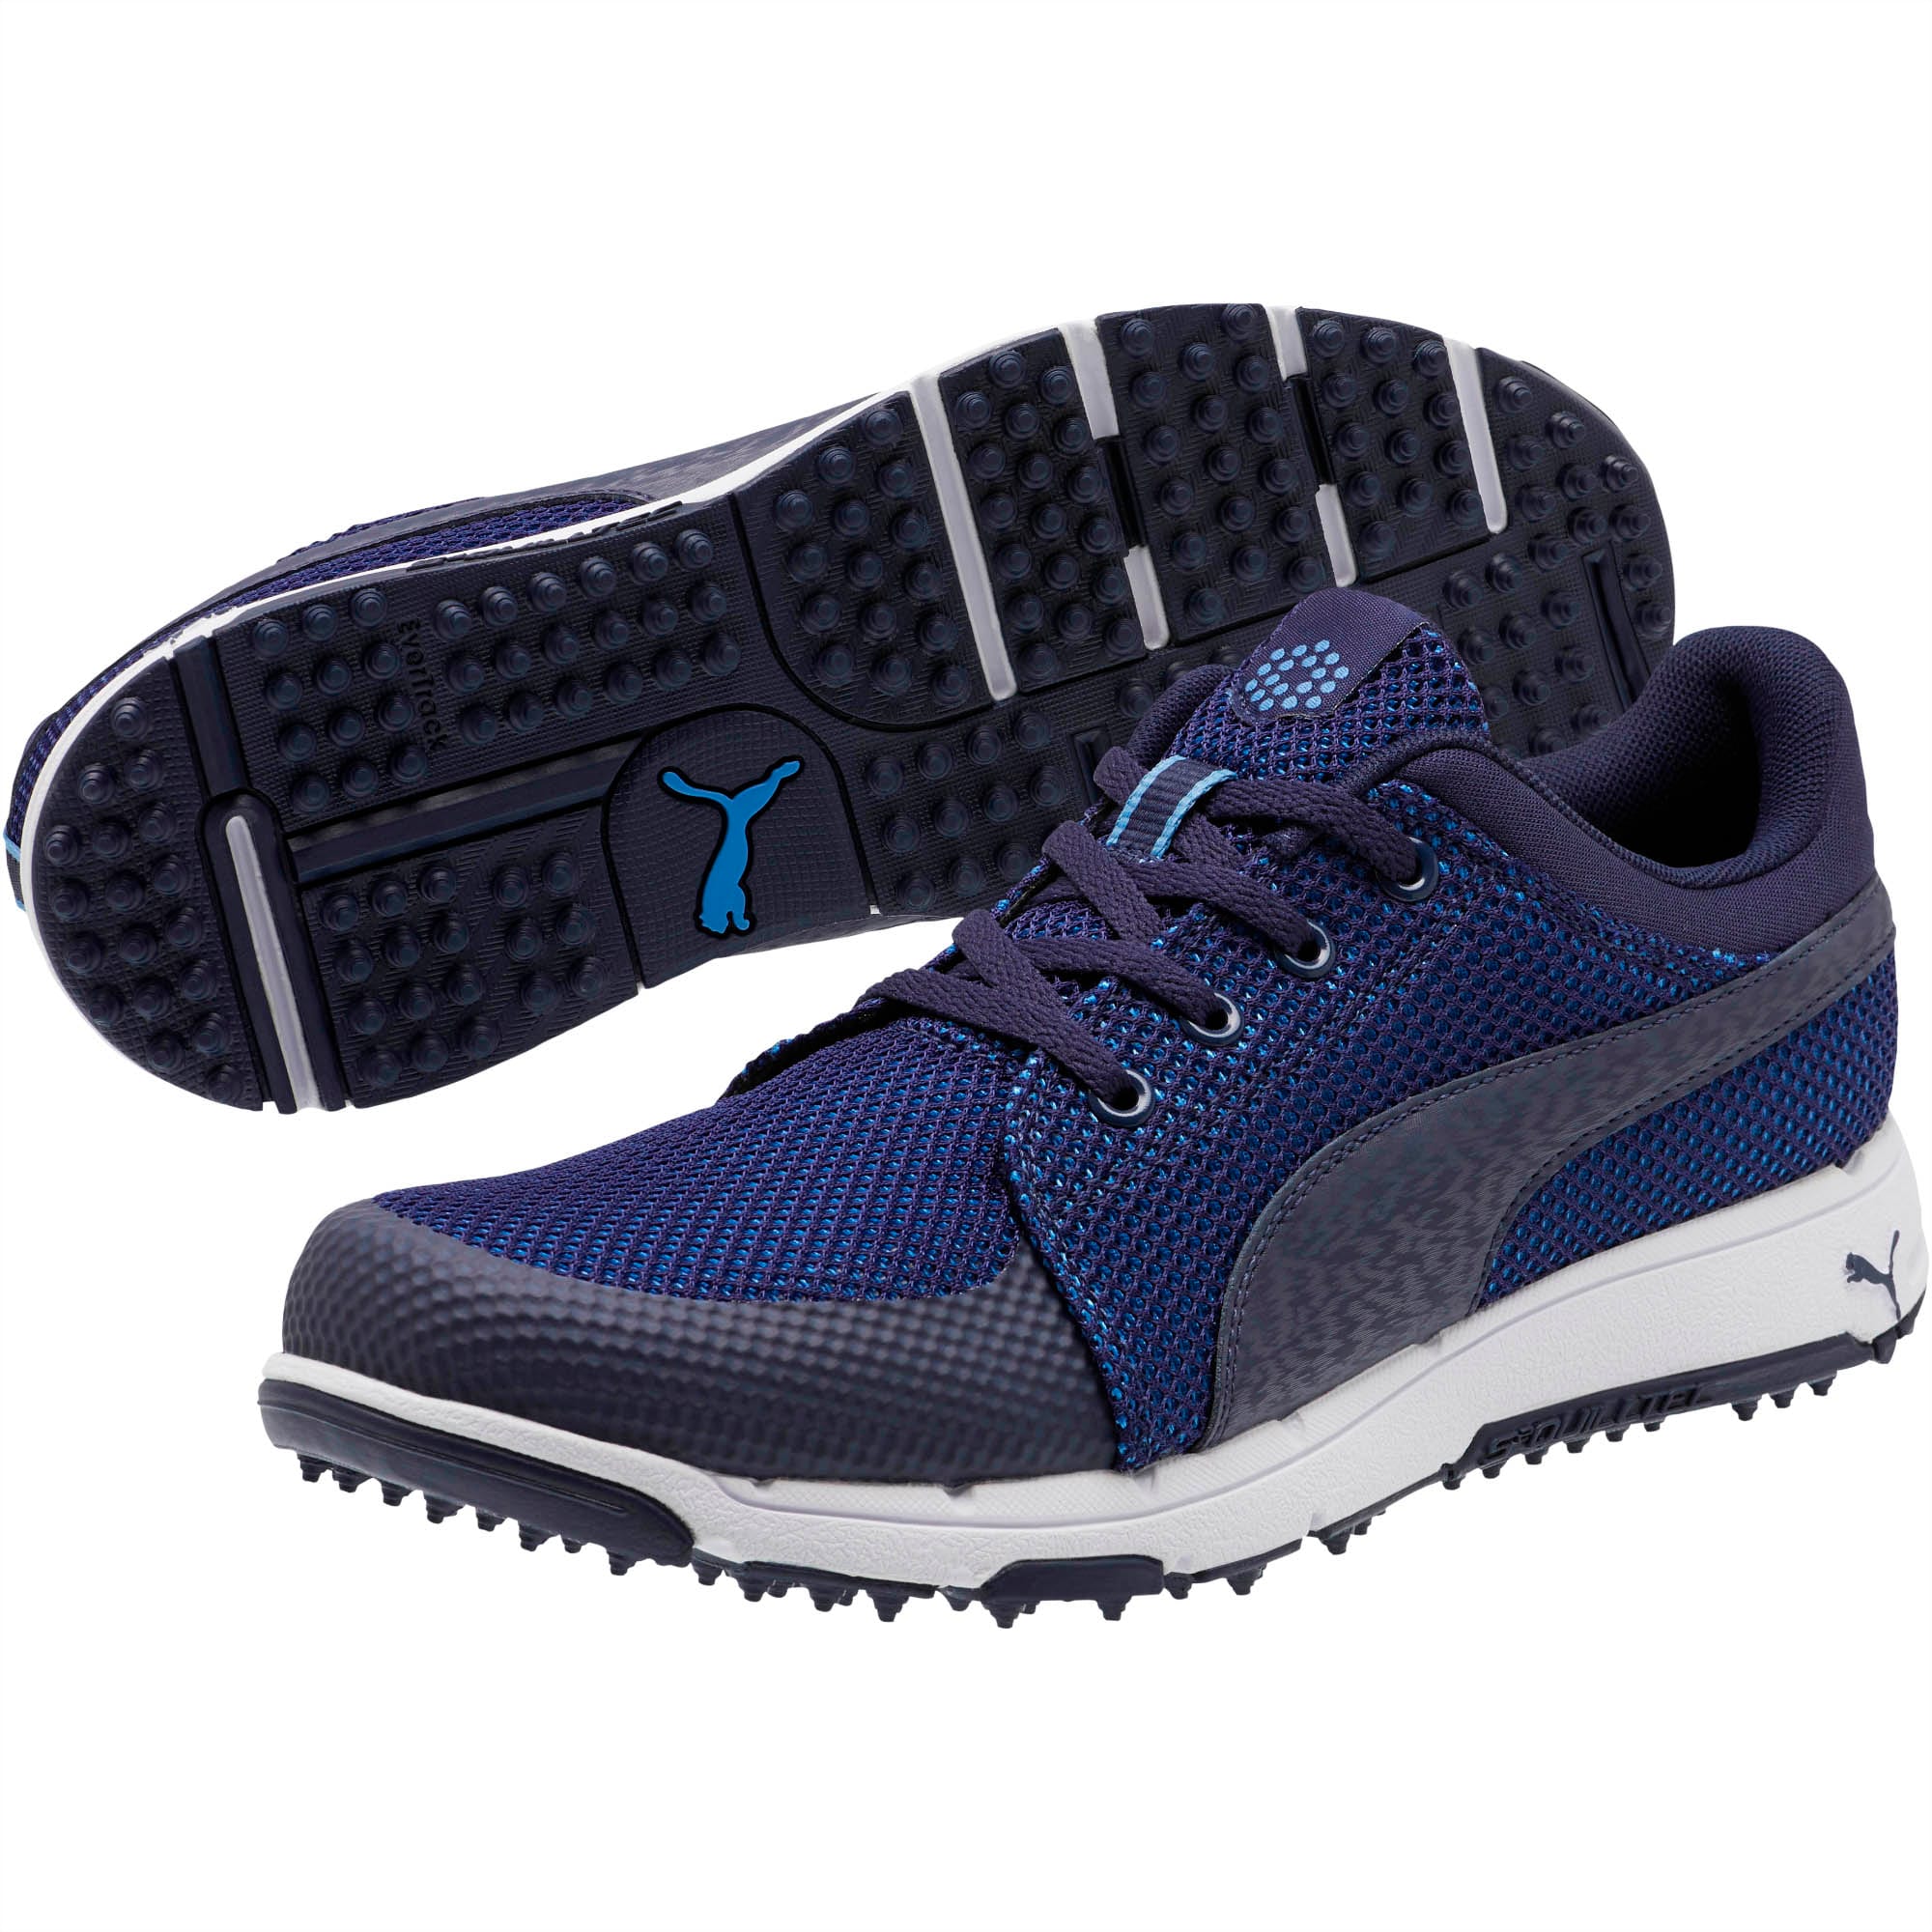 puma men's grip sport tech golf shoes